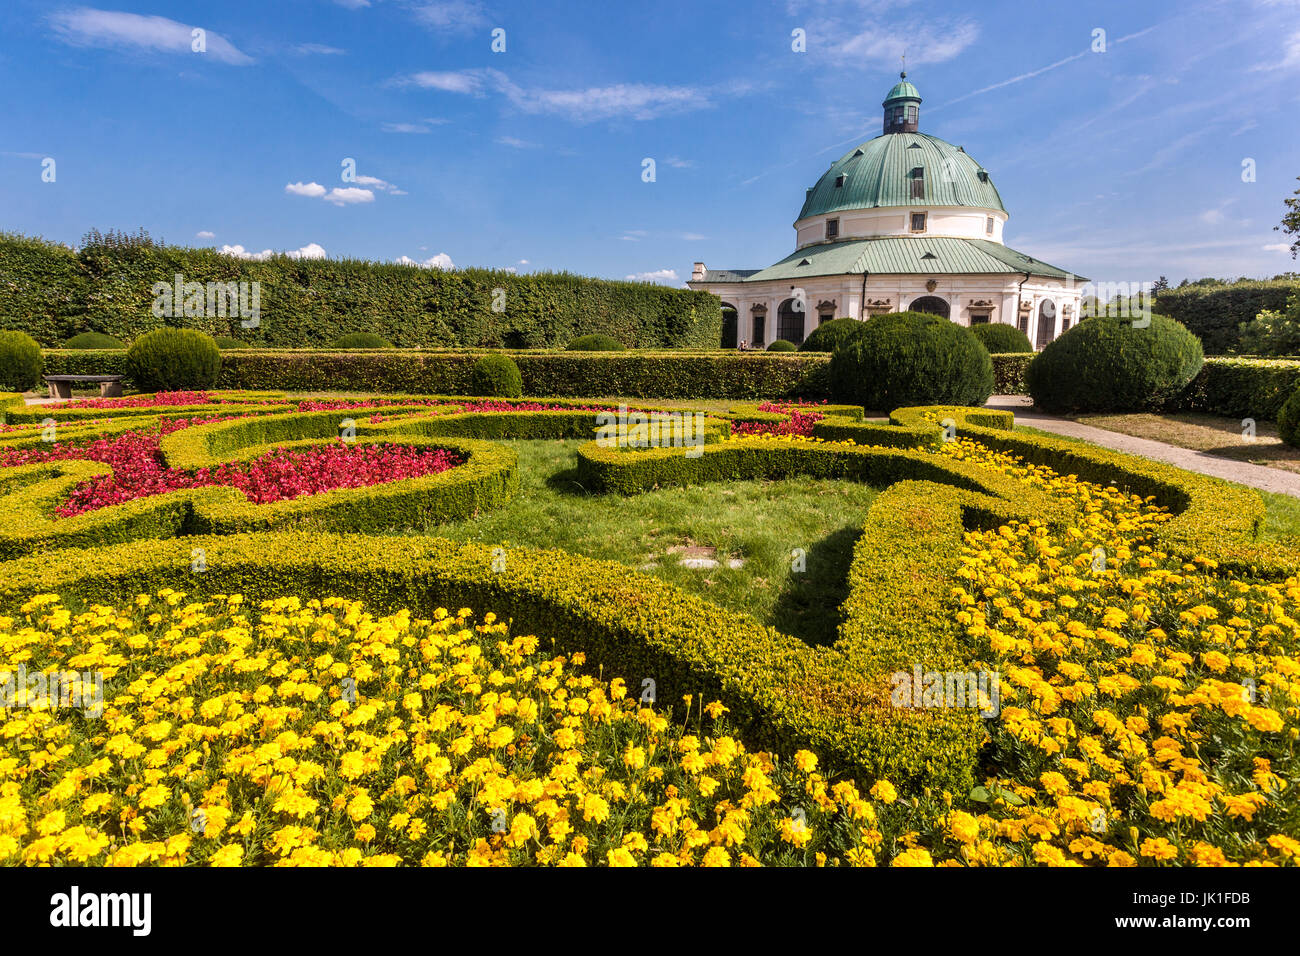 Jardin Kromeriz, Rotonde dans le jardin de plaisir Kvetna Zahrada UNESCO jardin baroque République tchèque beaux jardins baroques Banque D'Images